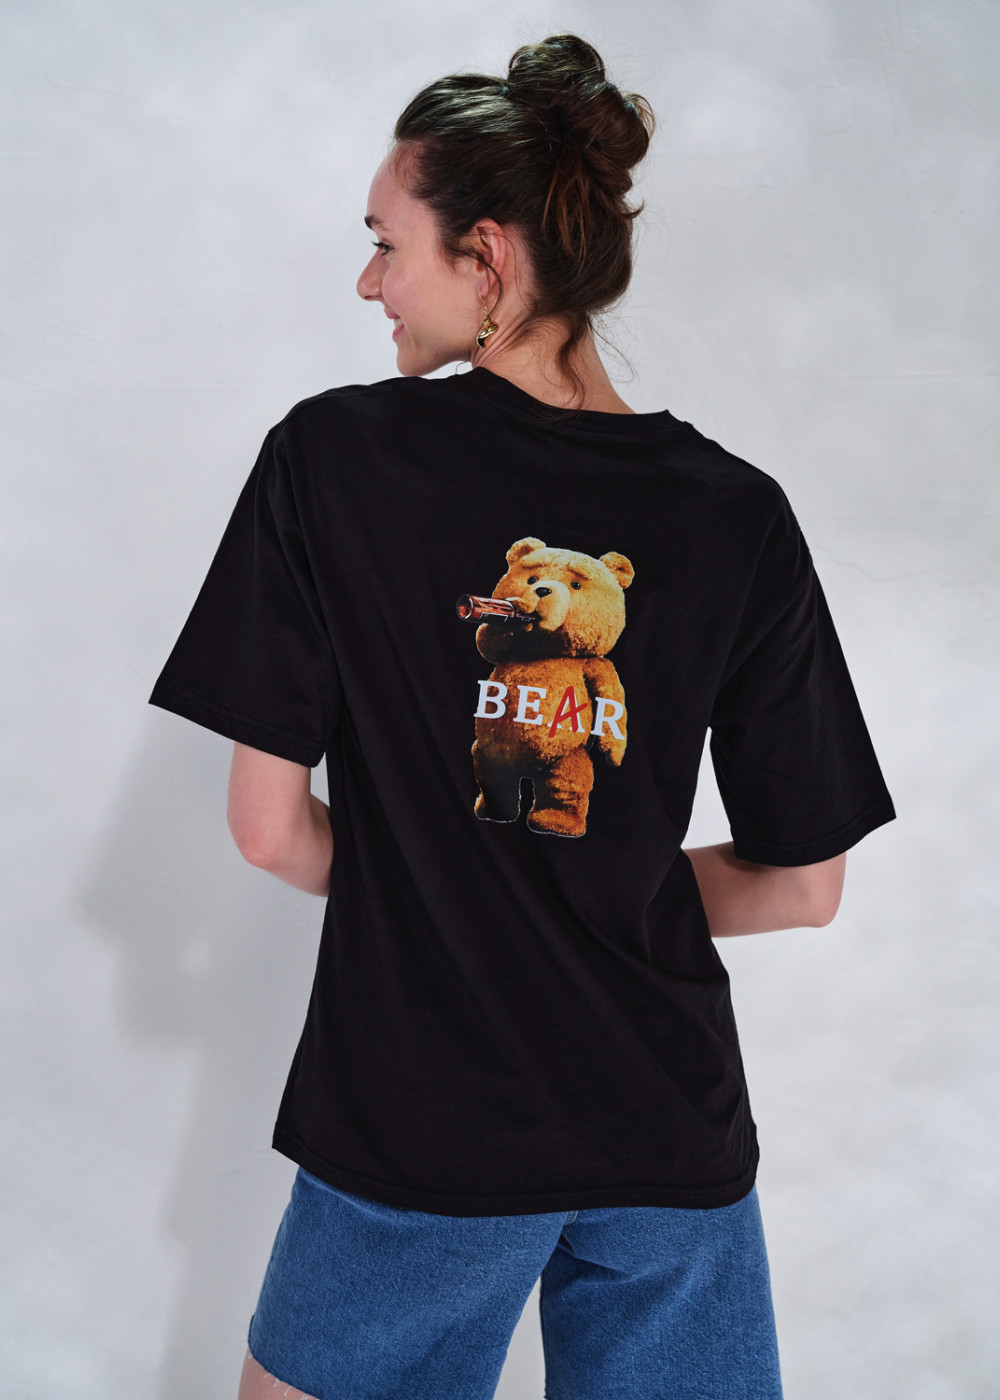 Bear Tshirt